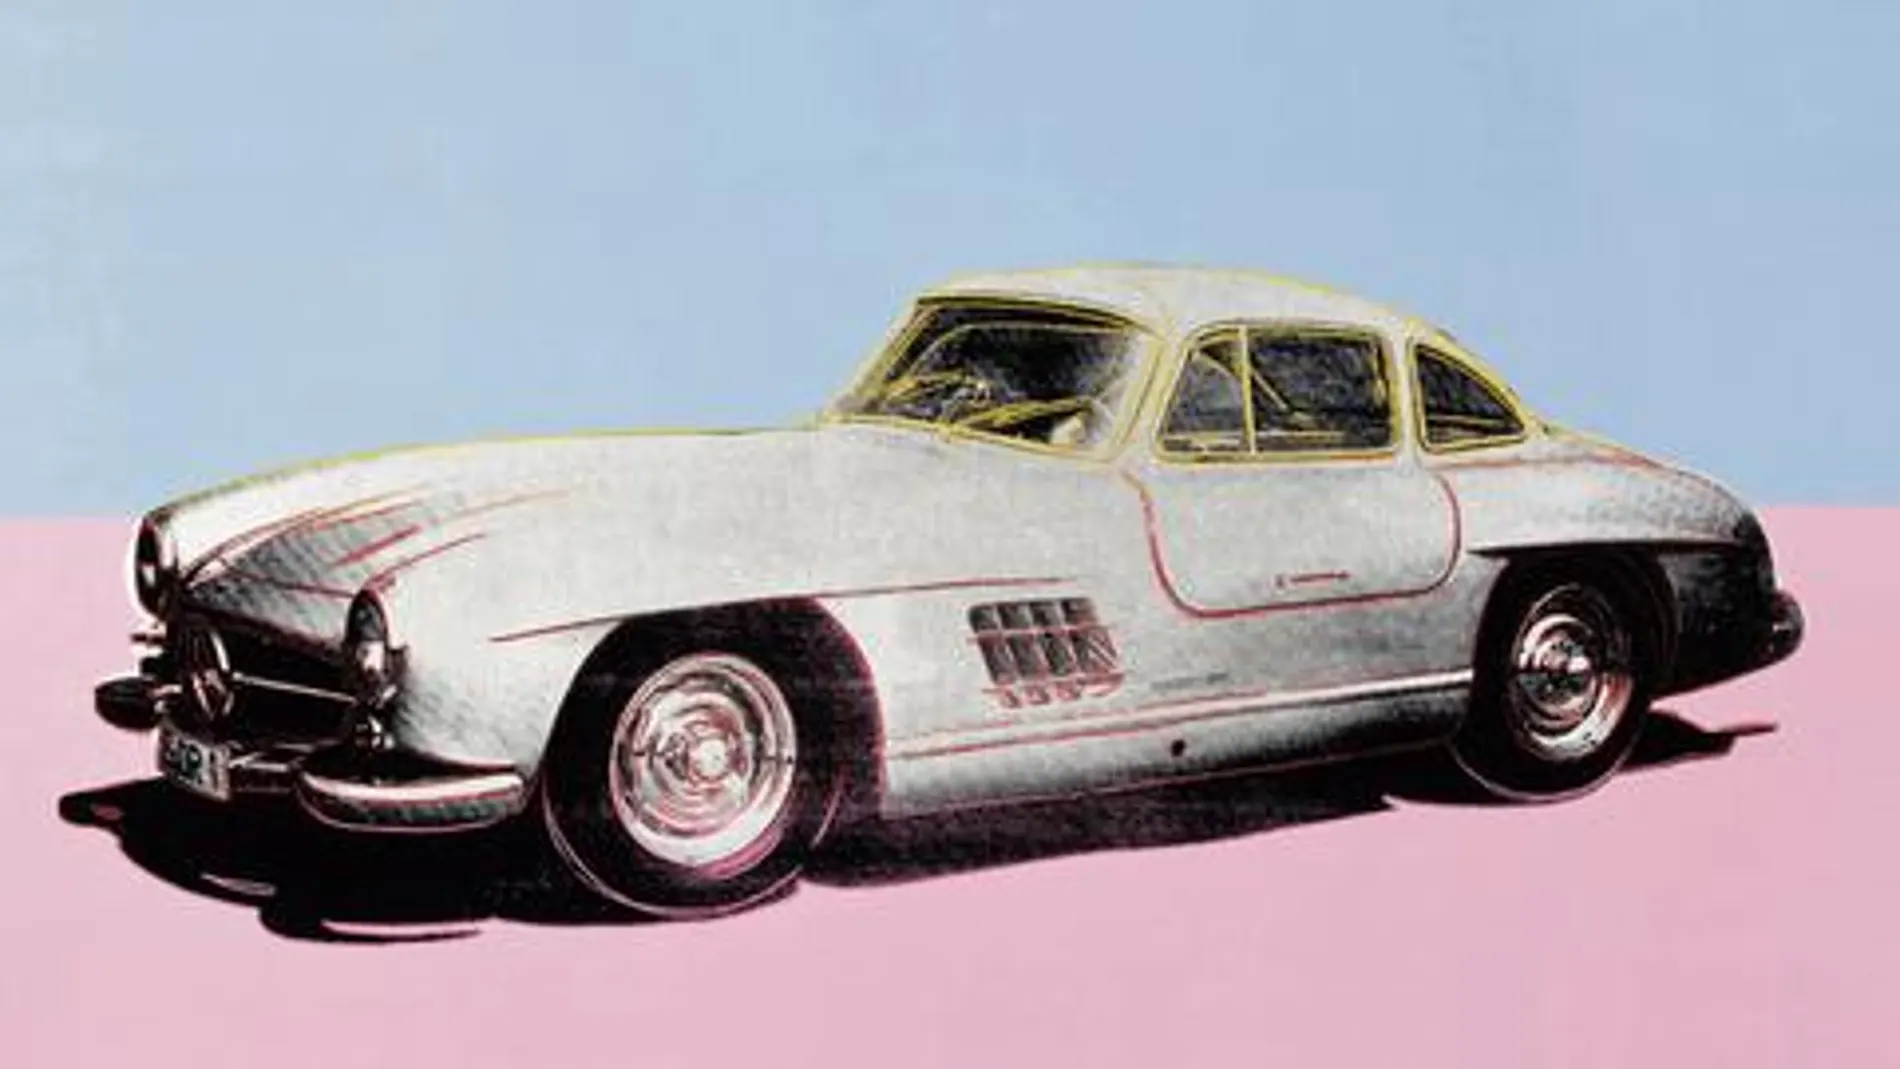 El coche real de la pintura de Warhol fue descubierto recientemente.